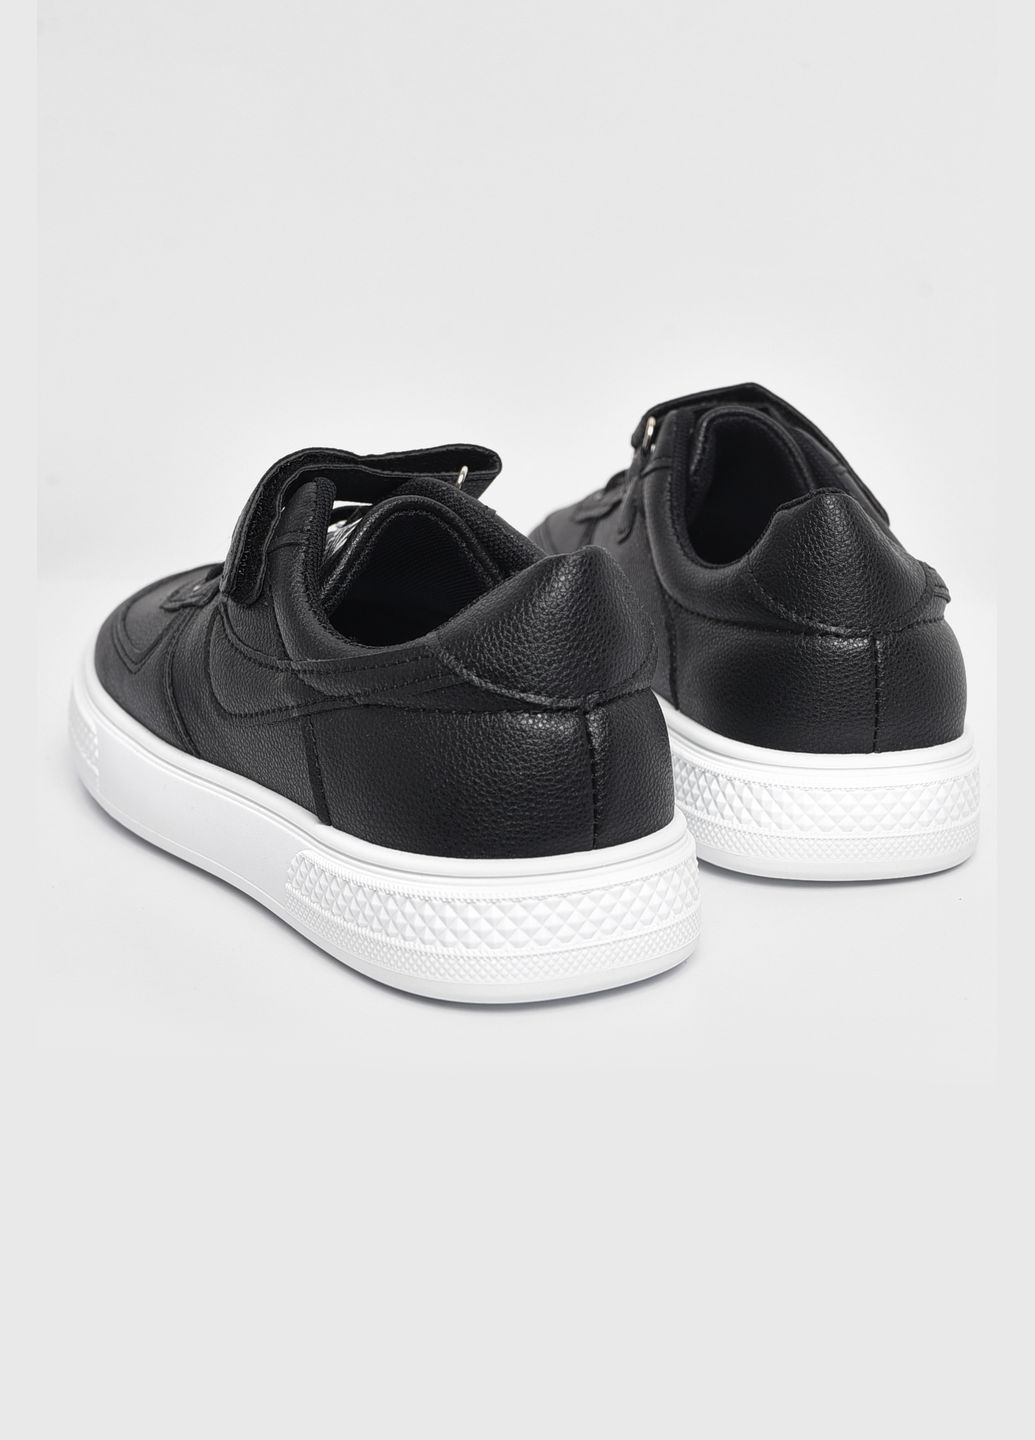 Чорні осінні кросівки дитячі чорного кольору на ліпучці та шнурівці Let's Shop